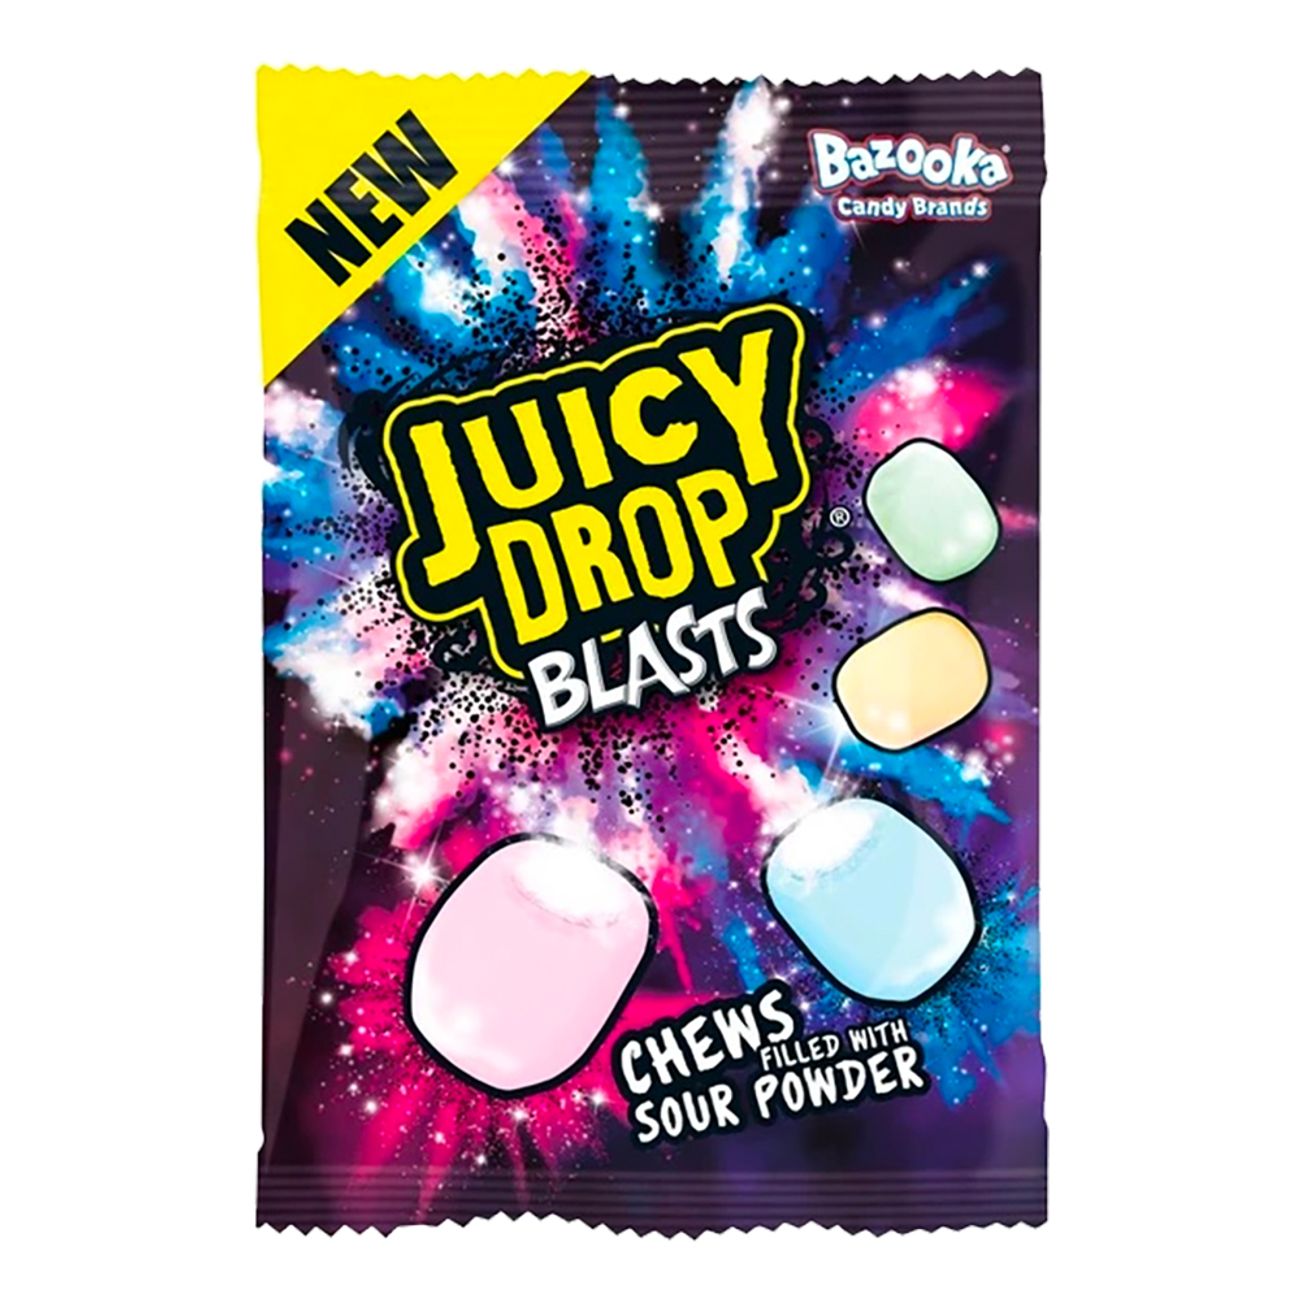 juicy-drop-blasts-90381-1